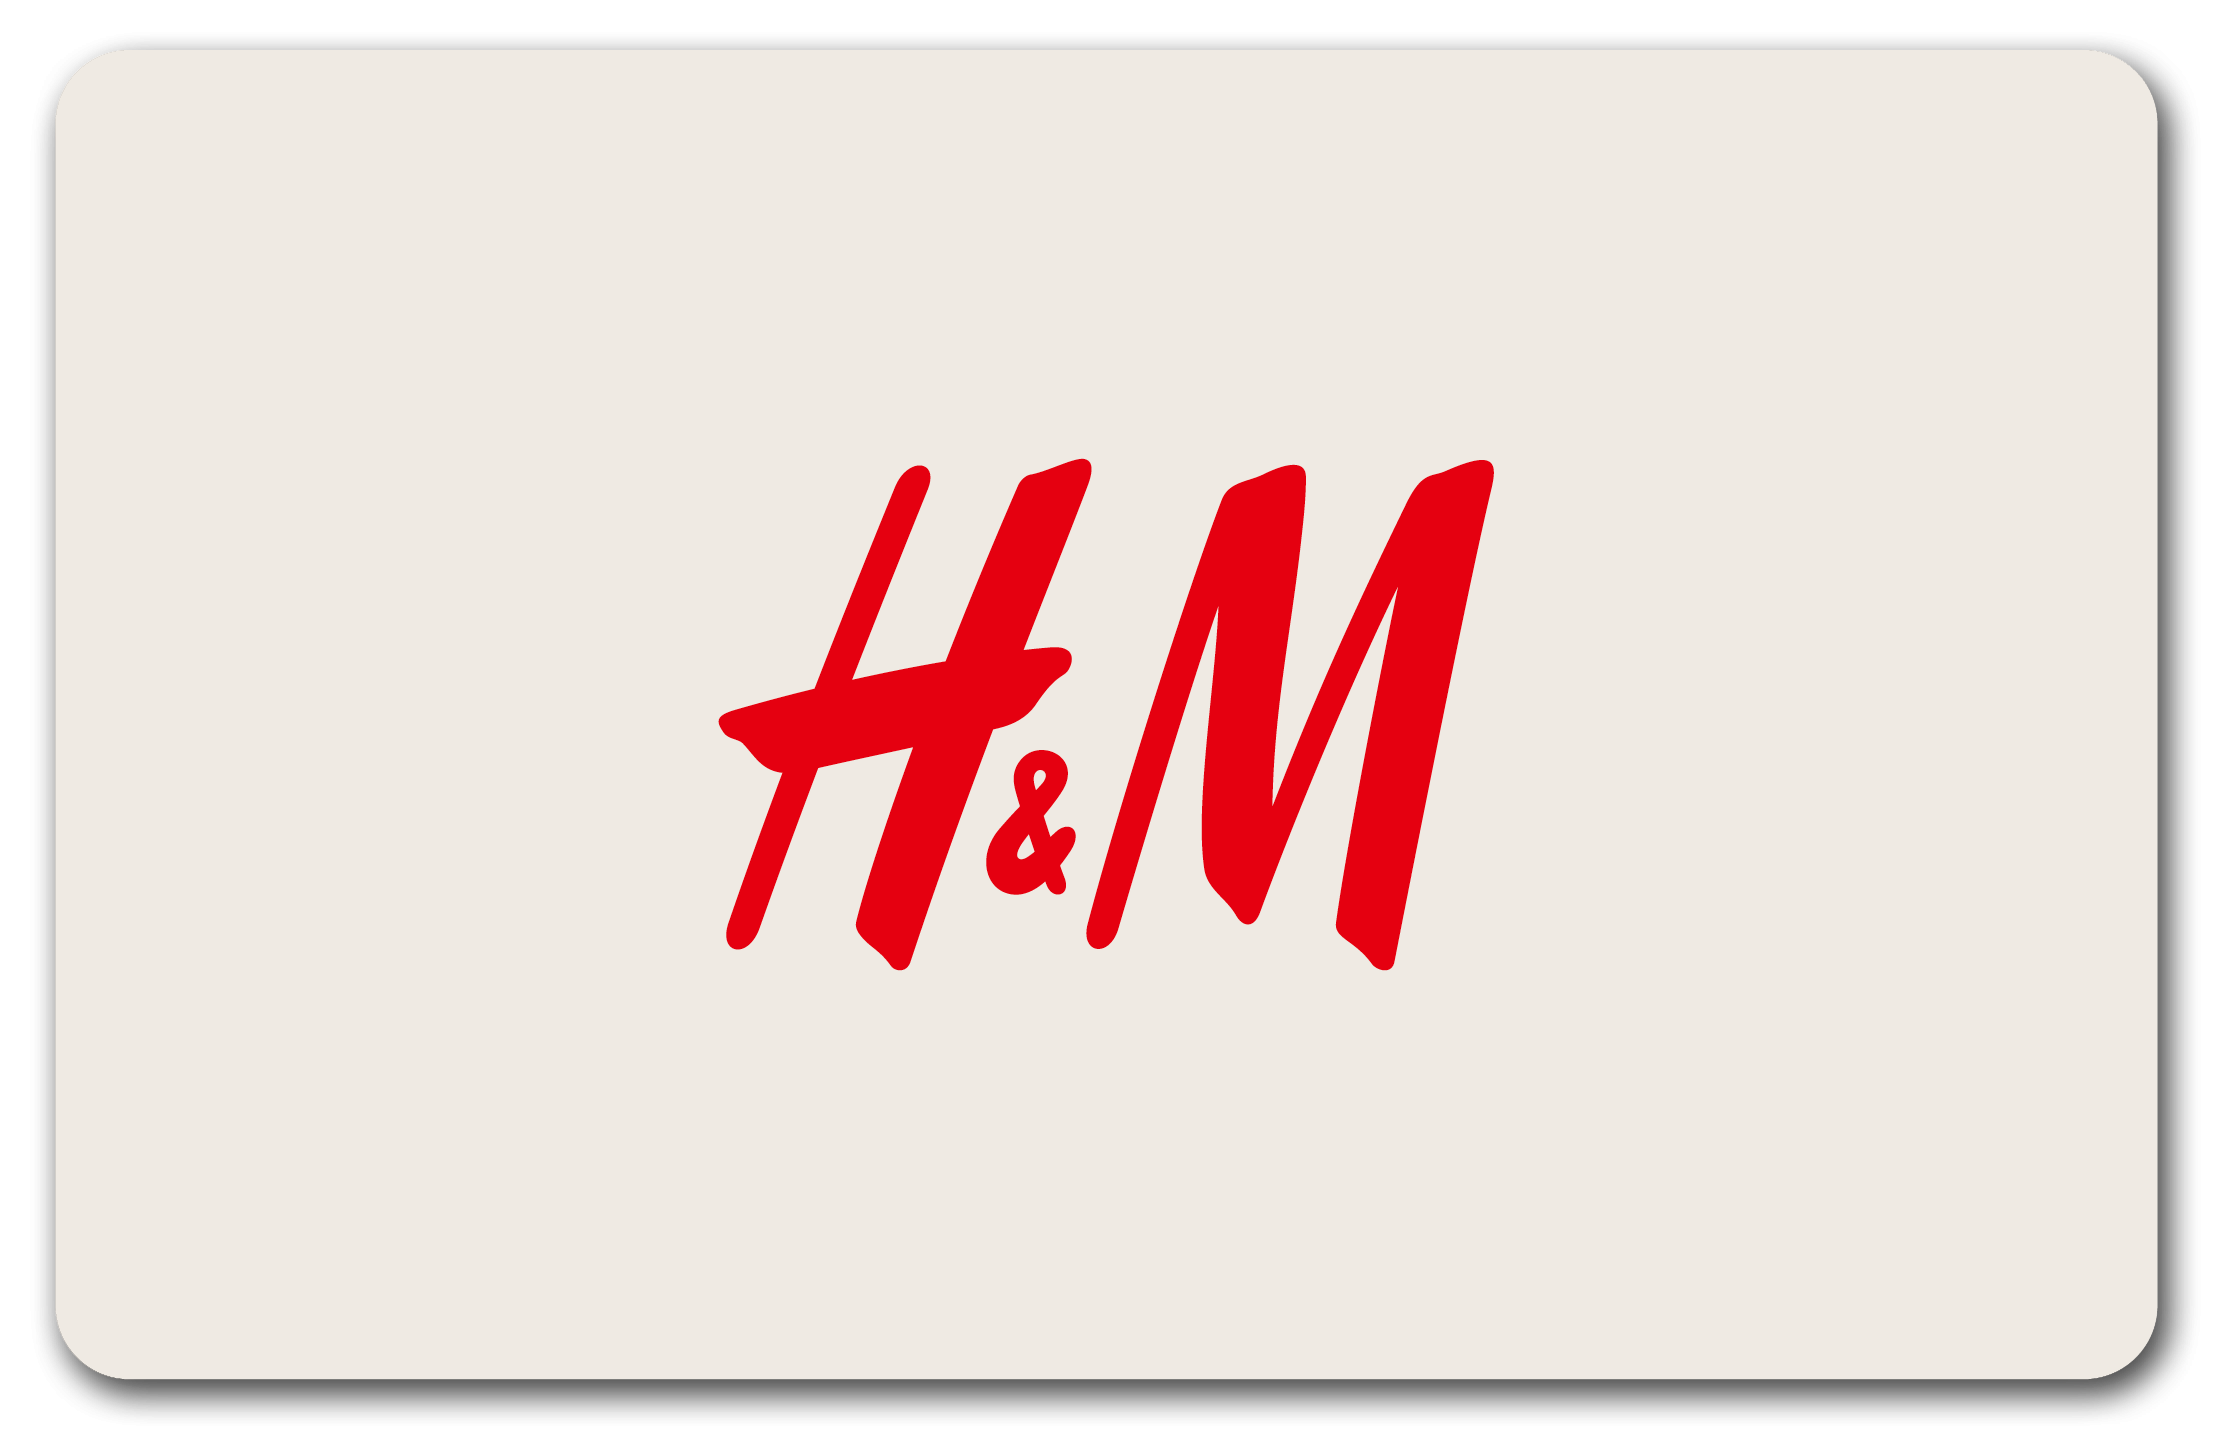 H&M Saint-Laurent-du-Var